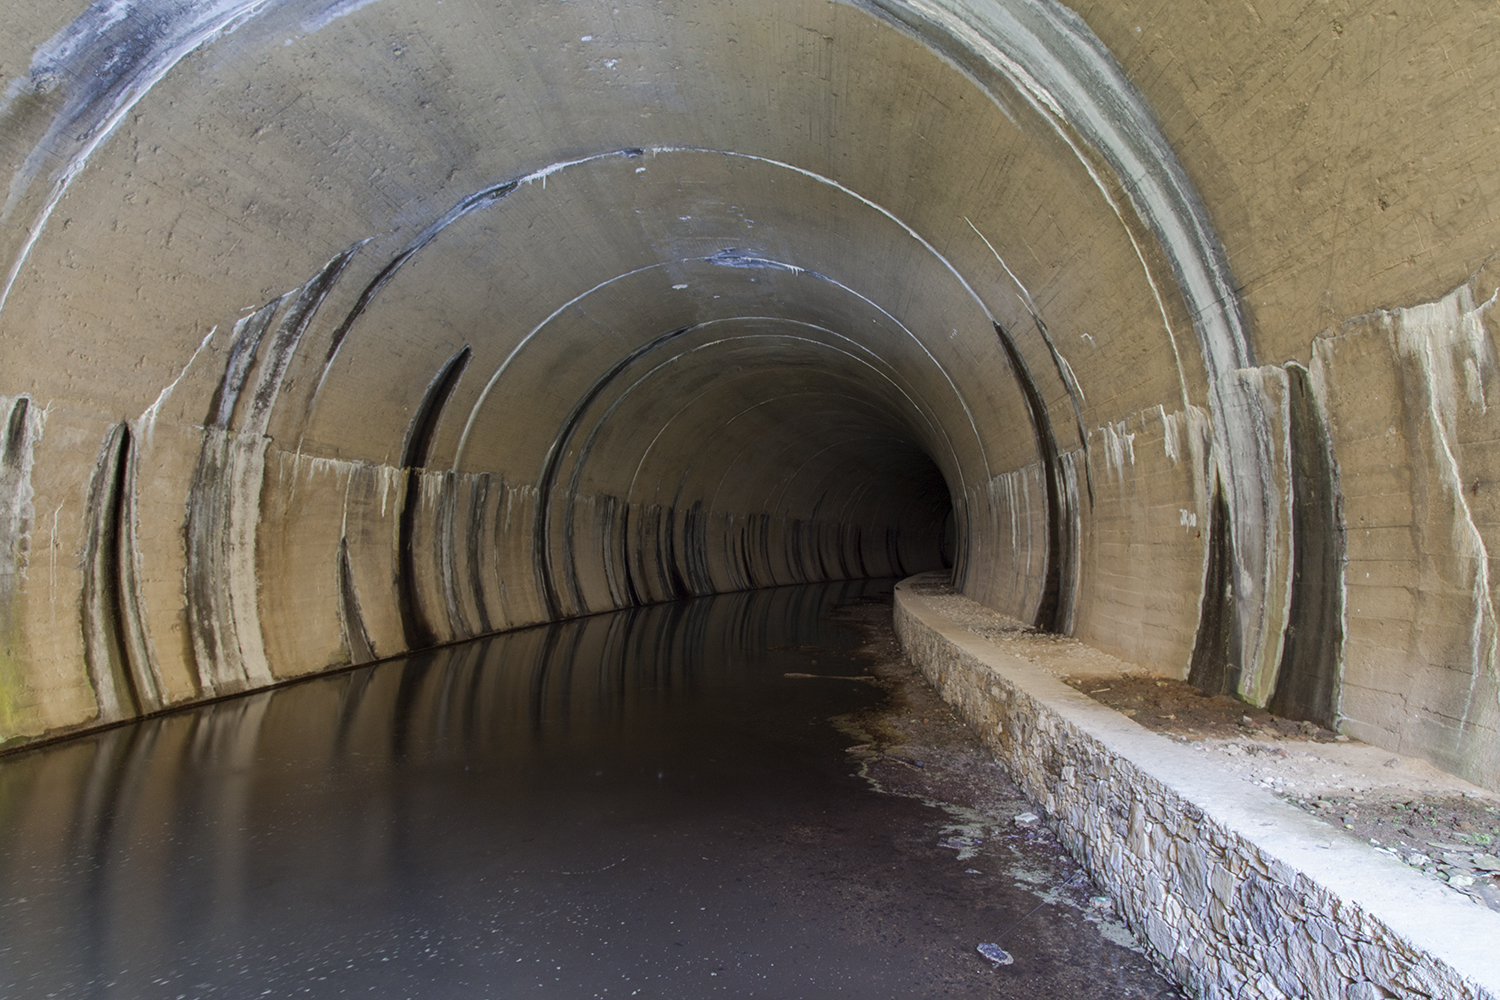 tunel de barragem com agua